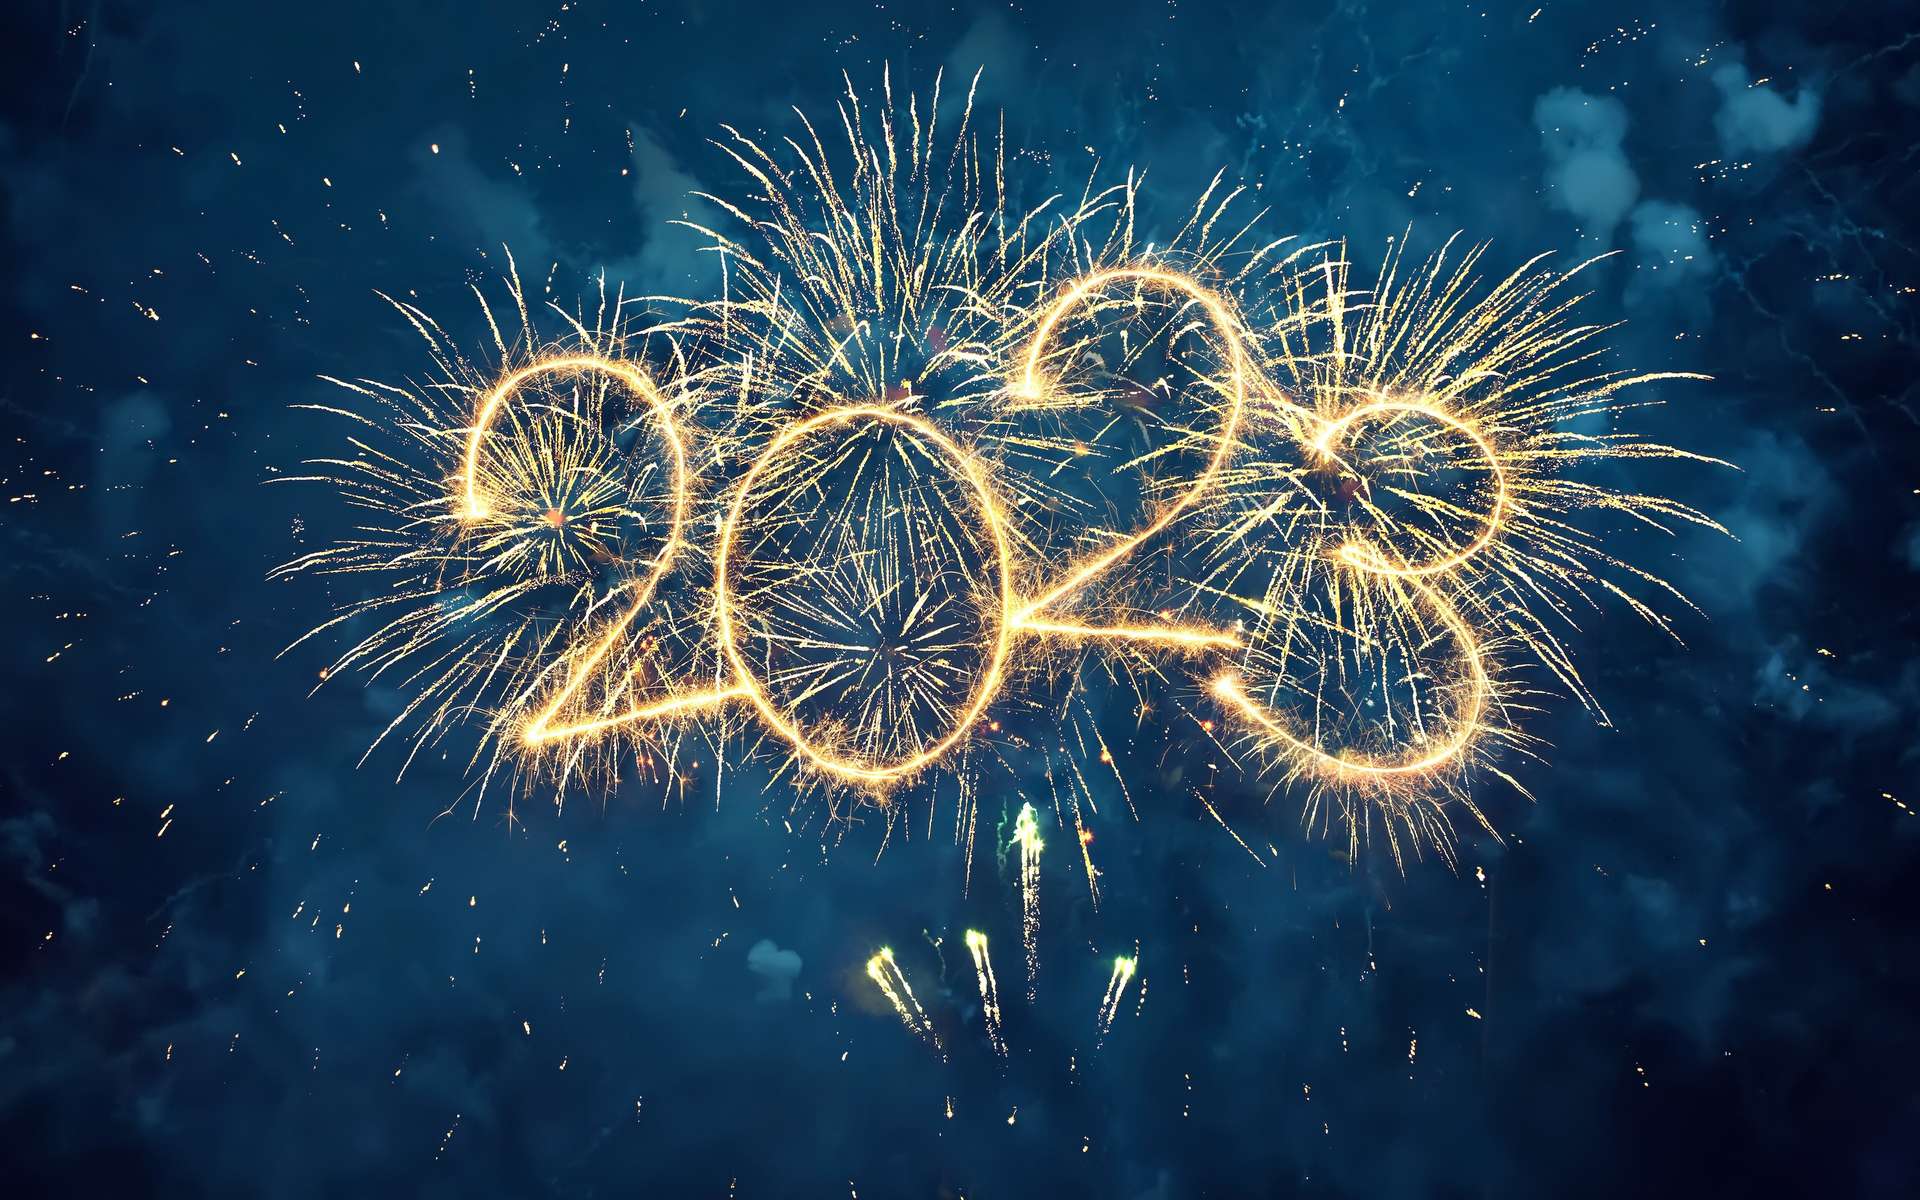 Futura vous souhaite une très bonne année 2023 !